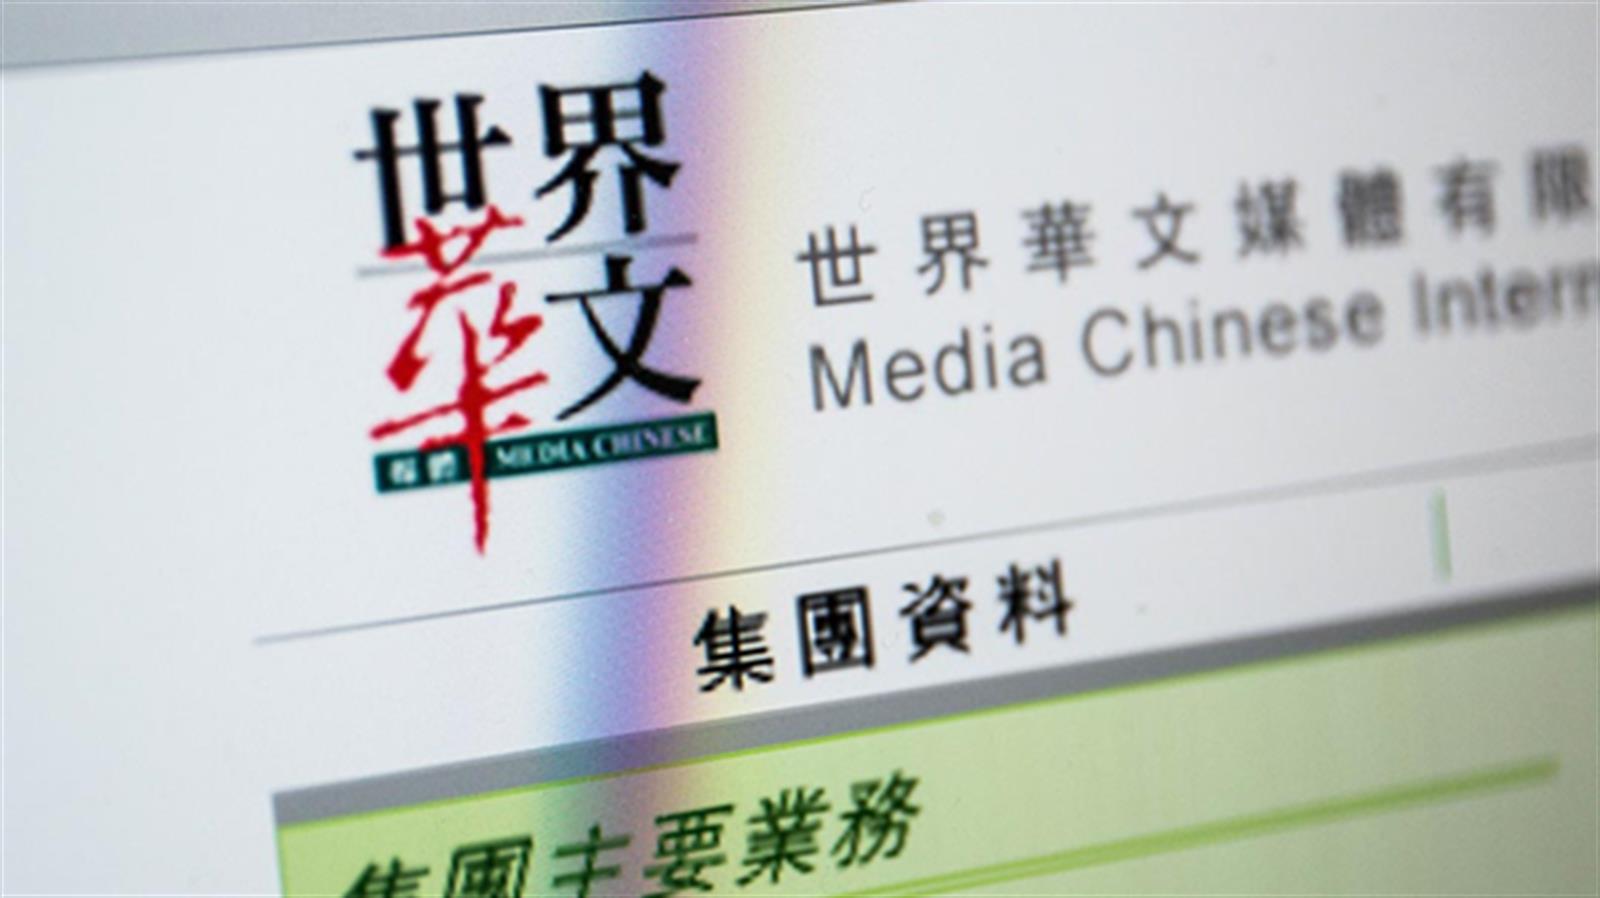 《明報》母企世界華文媒體發盈警 料全年蝕不多於200萬美元